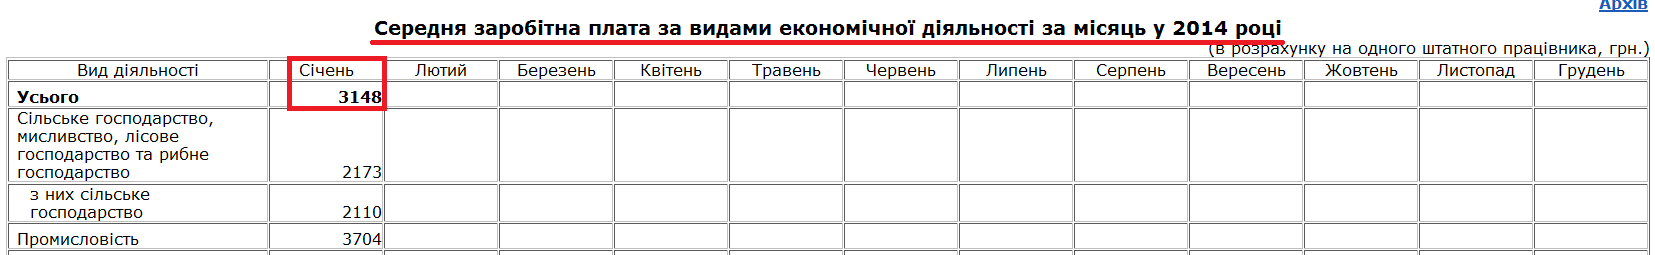 http://www.ukrstat.gov.ua/operativ/operativ2014/gdn/Zarp_ek_m/zpm2014_u.htm